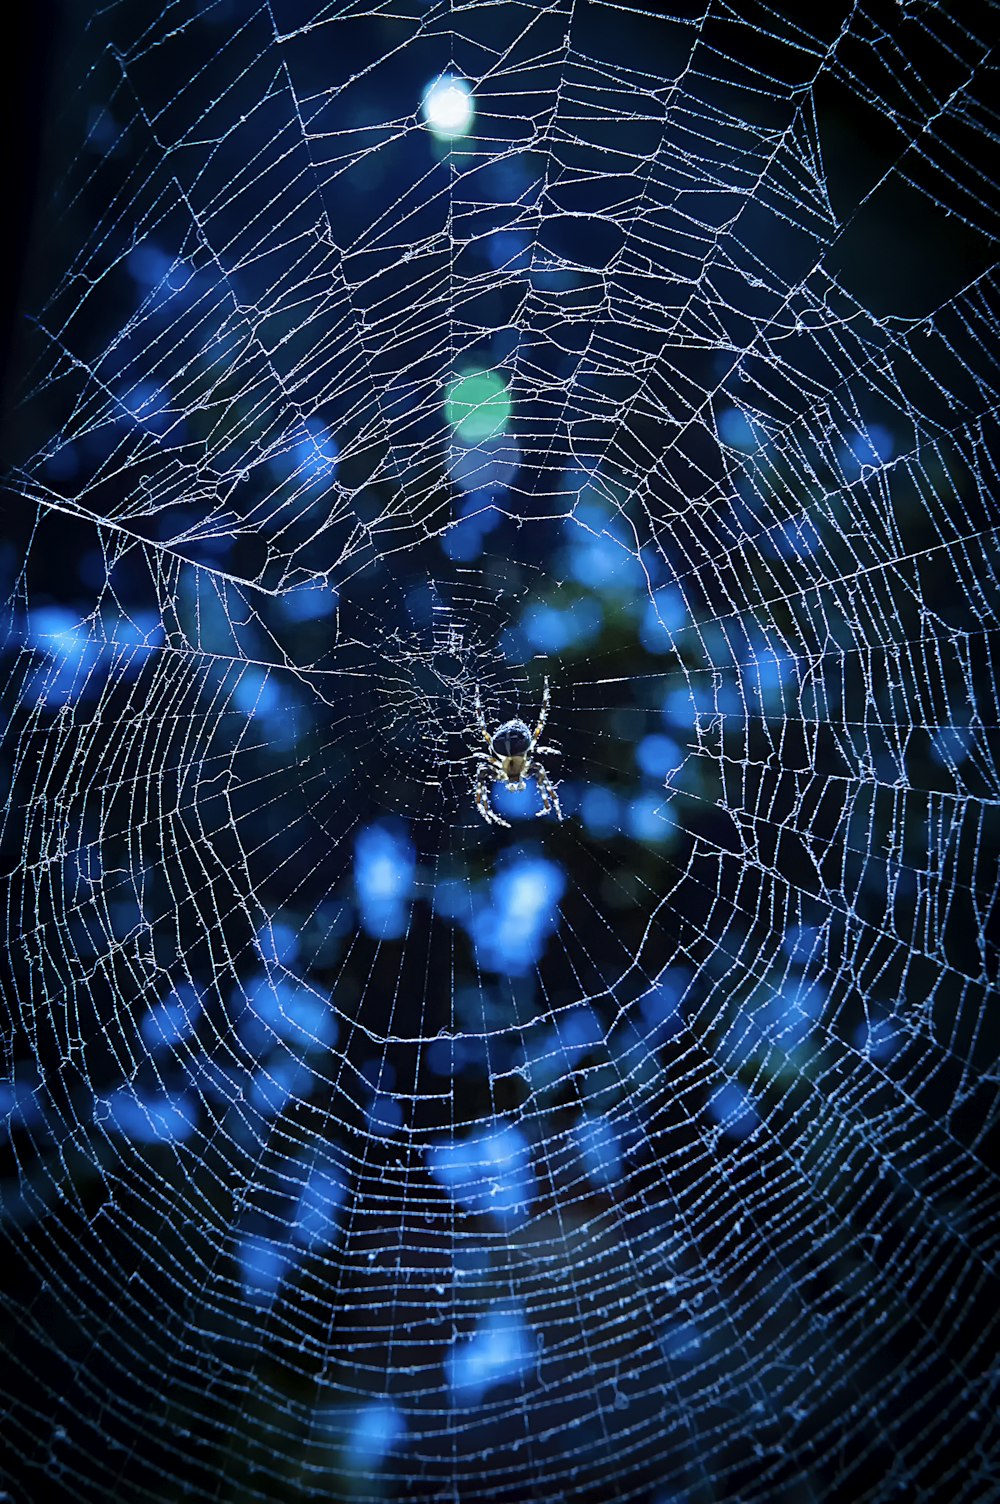 Foto mit flachem Fokus der grauen Spinne